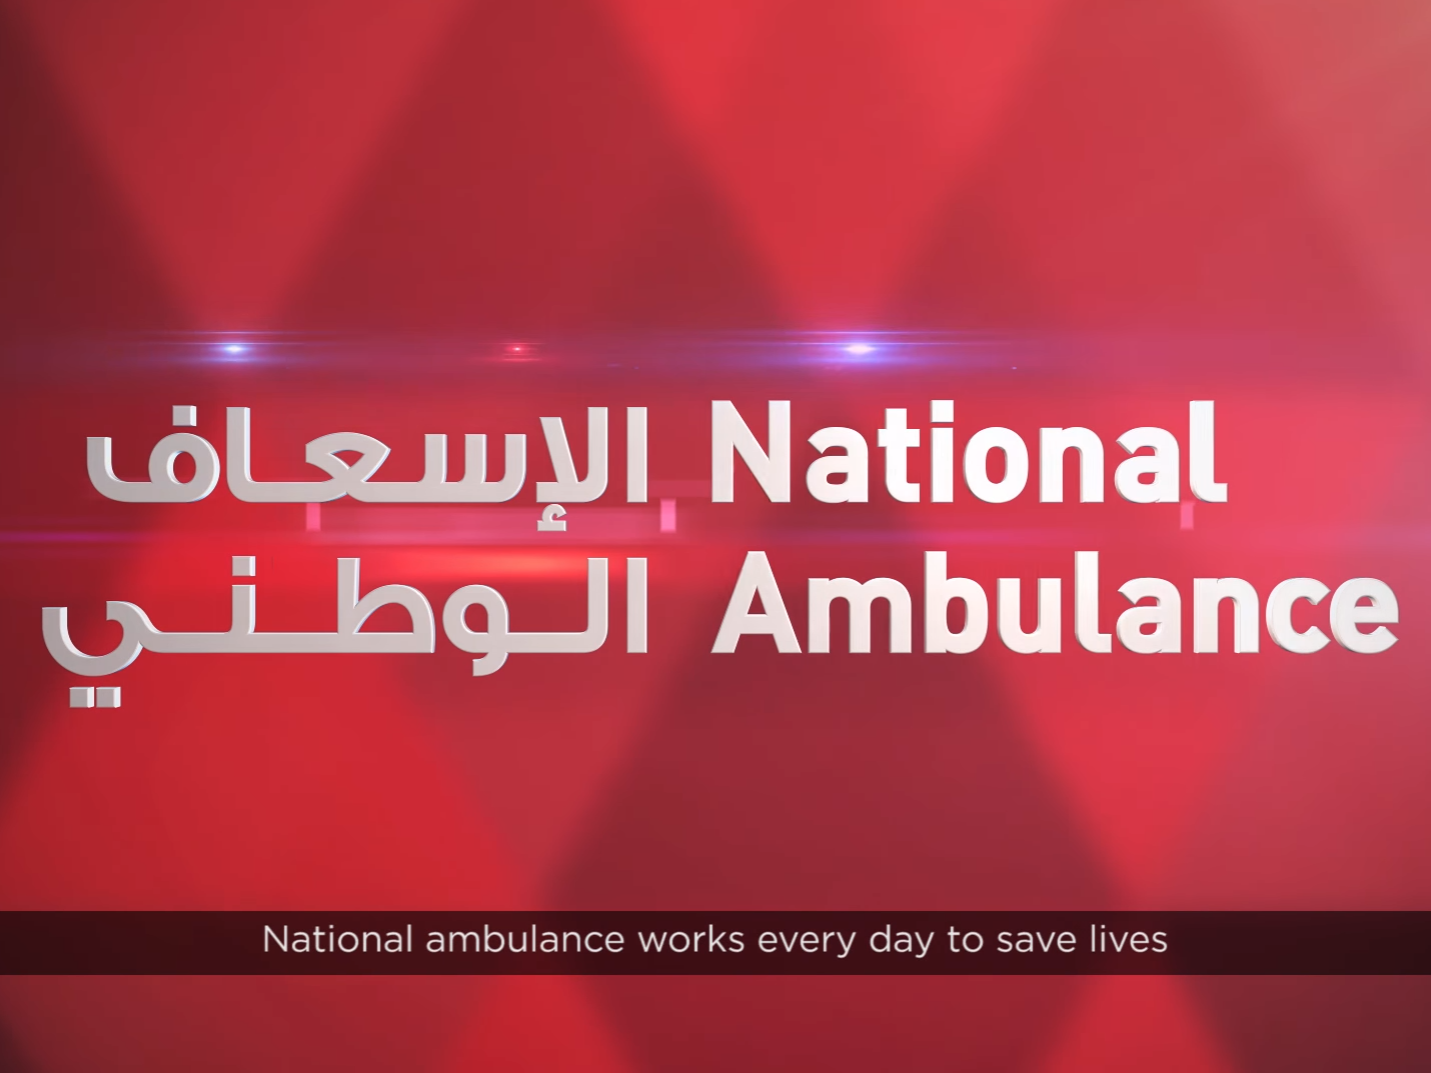 الإسعاف الوطني يطلق حملة توعوية لتعزيز الثقافة والسلوكيات الإسعافية في الإمارات العربية المتحدة